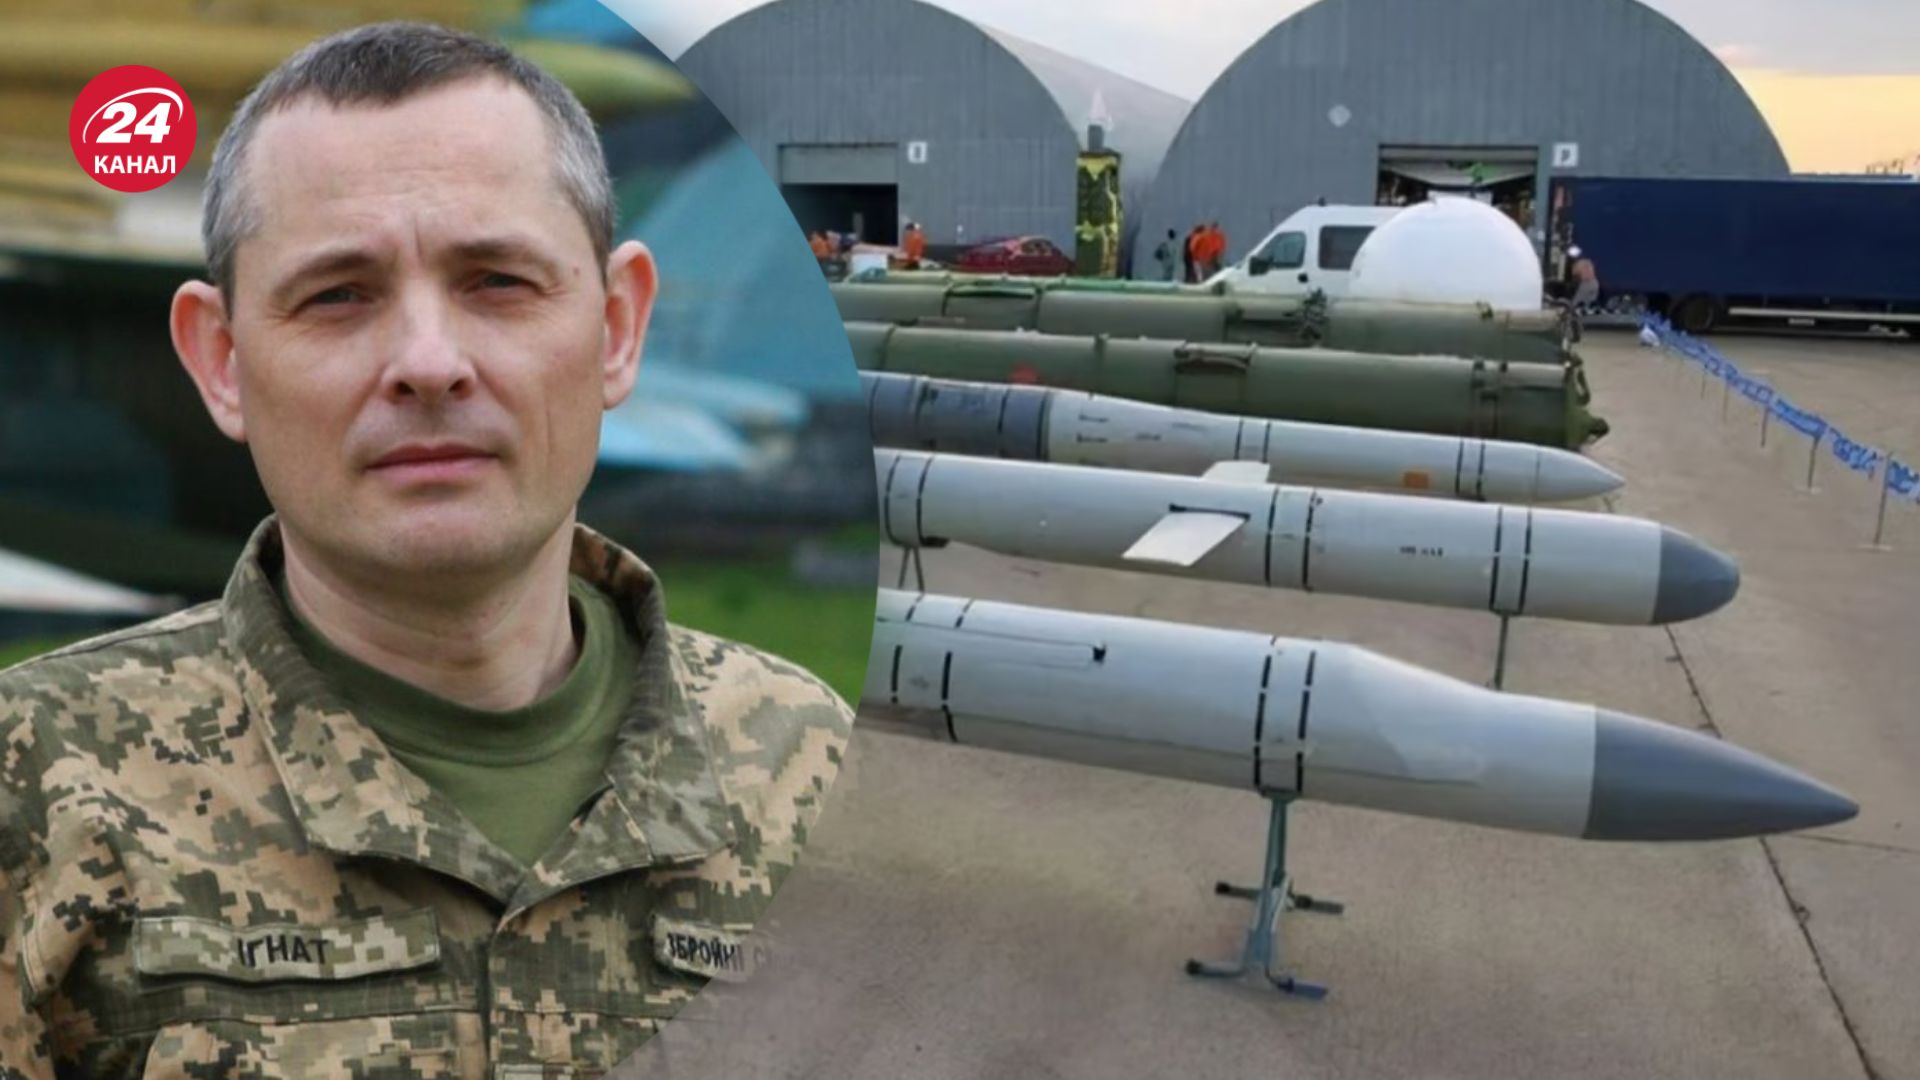 Ігнат прокоментував нарощення виробництва ракет росіянами